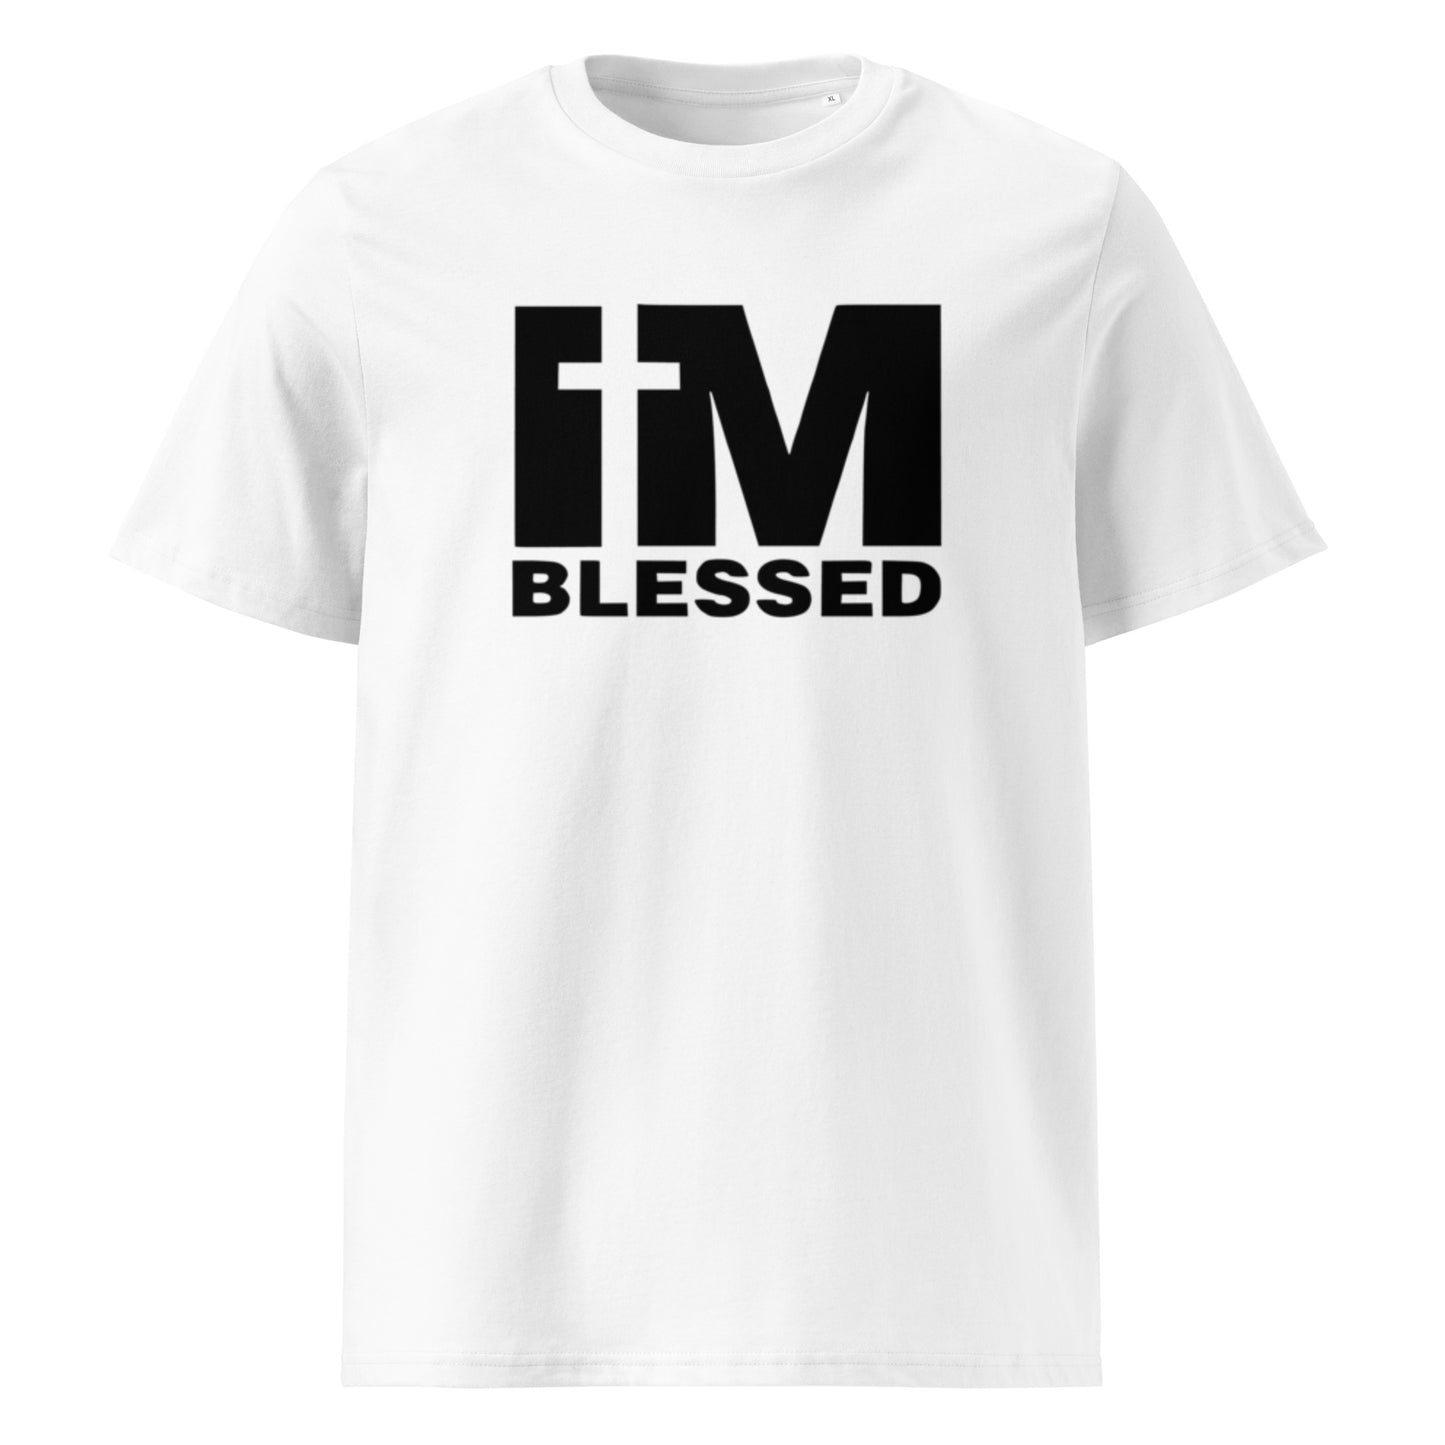 Camiseta Blessed